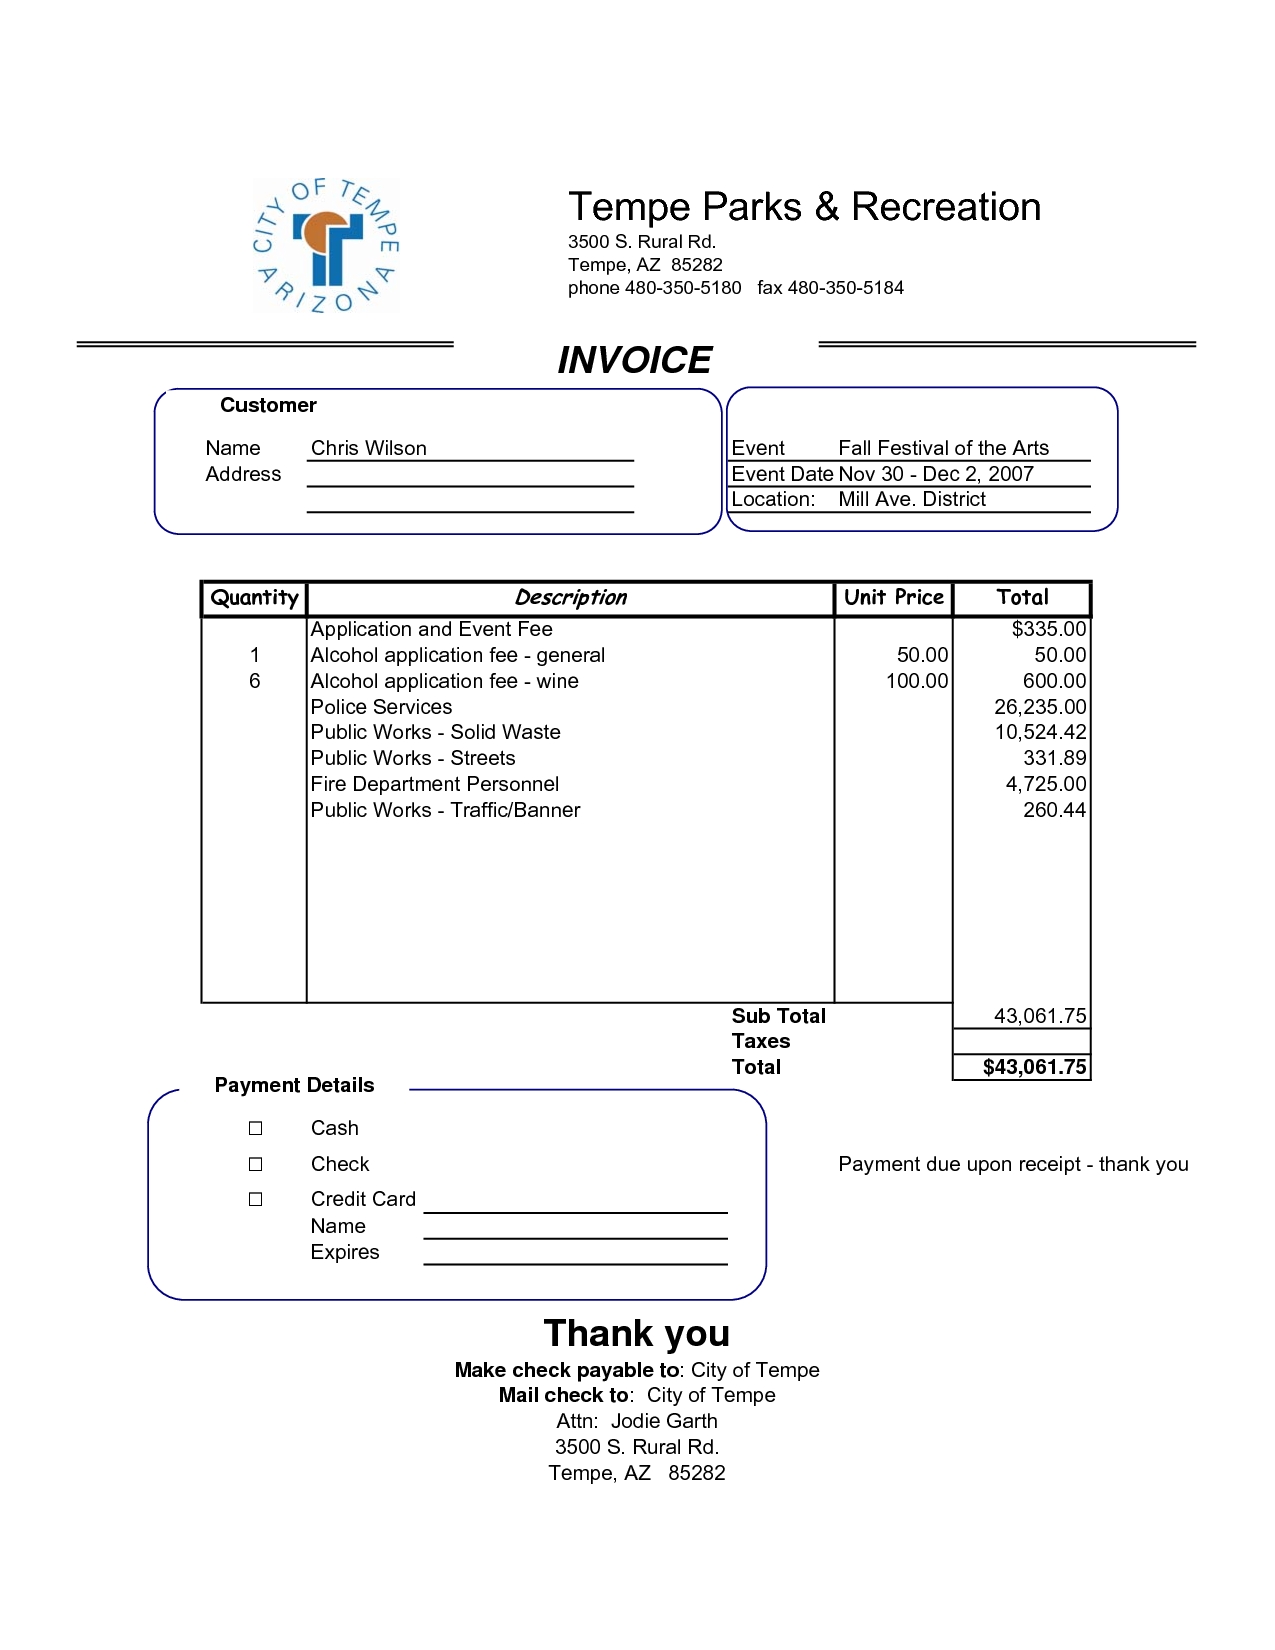 xls invoice template invoice template xls cv template xls httpwebdesign14 1275 X 1650